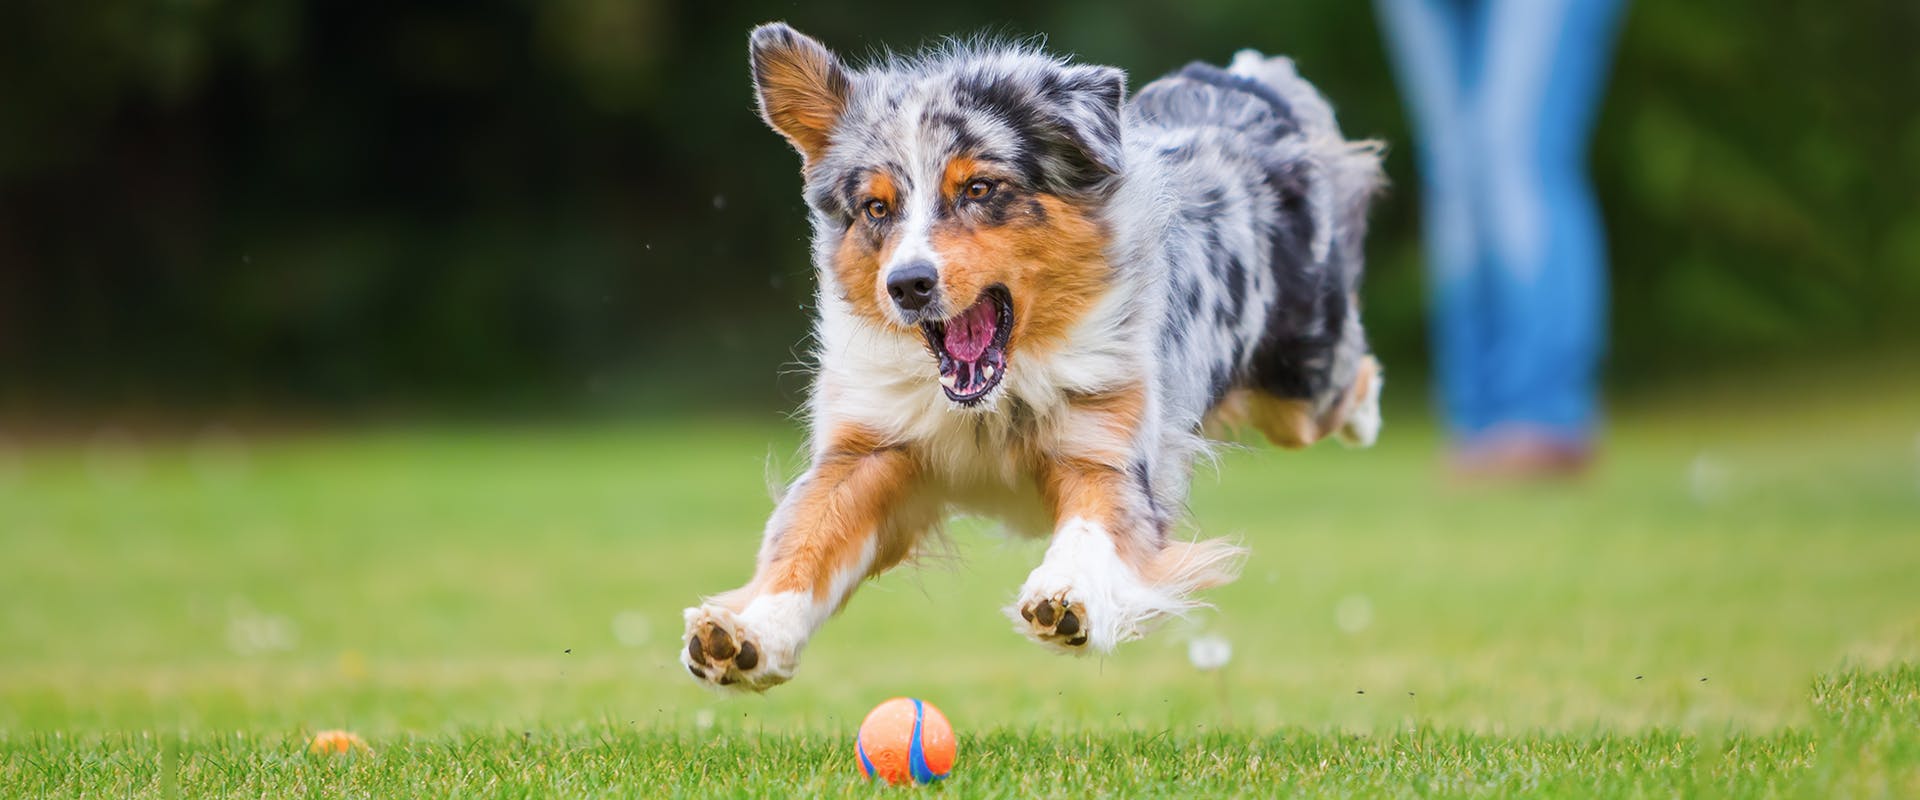 A cute Australian Shepherd puppy chasing after an orange ball